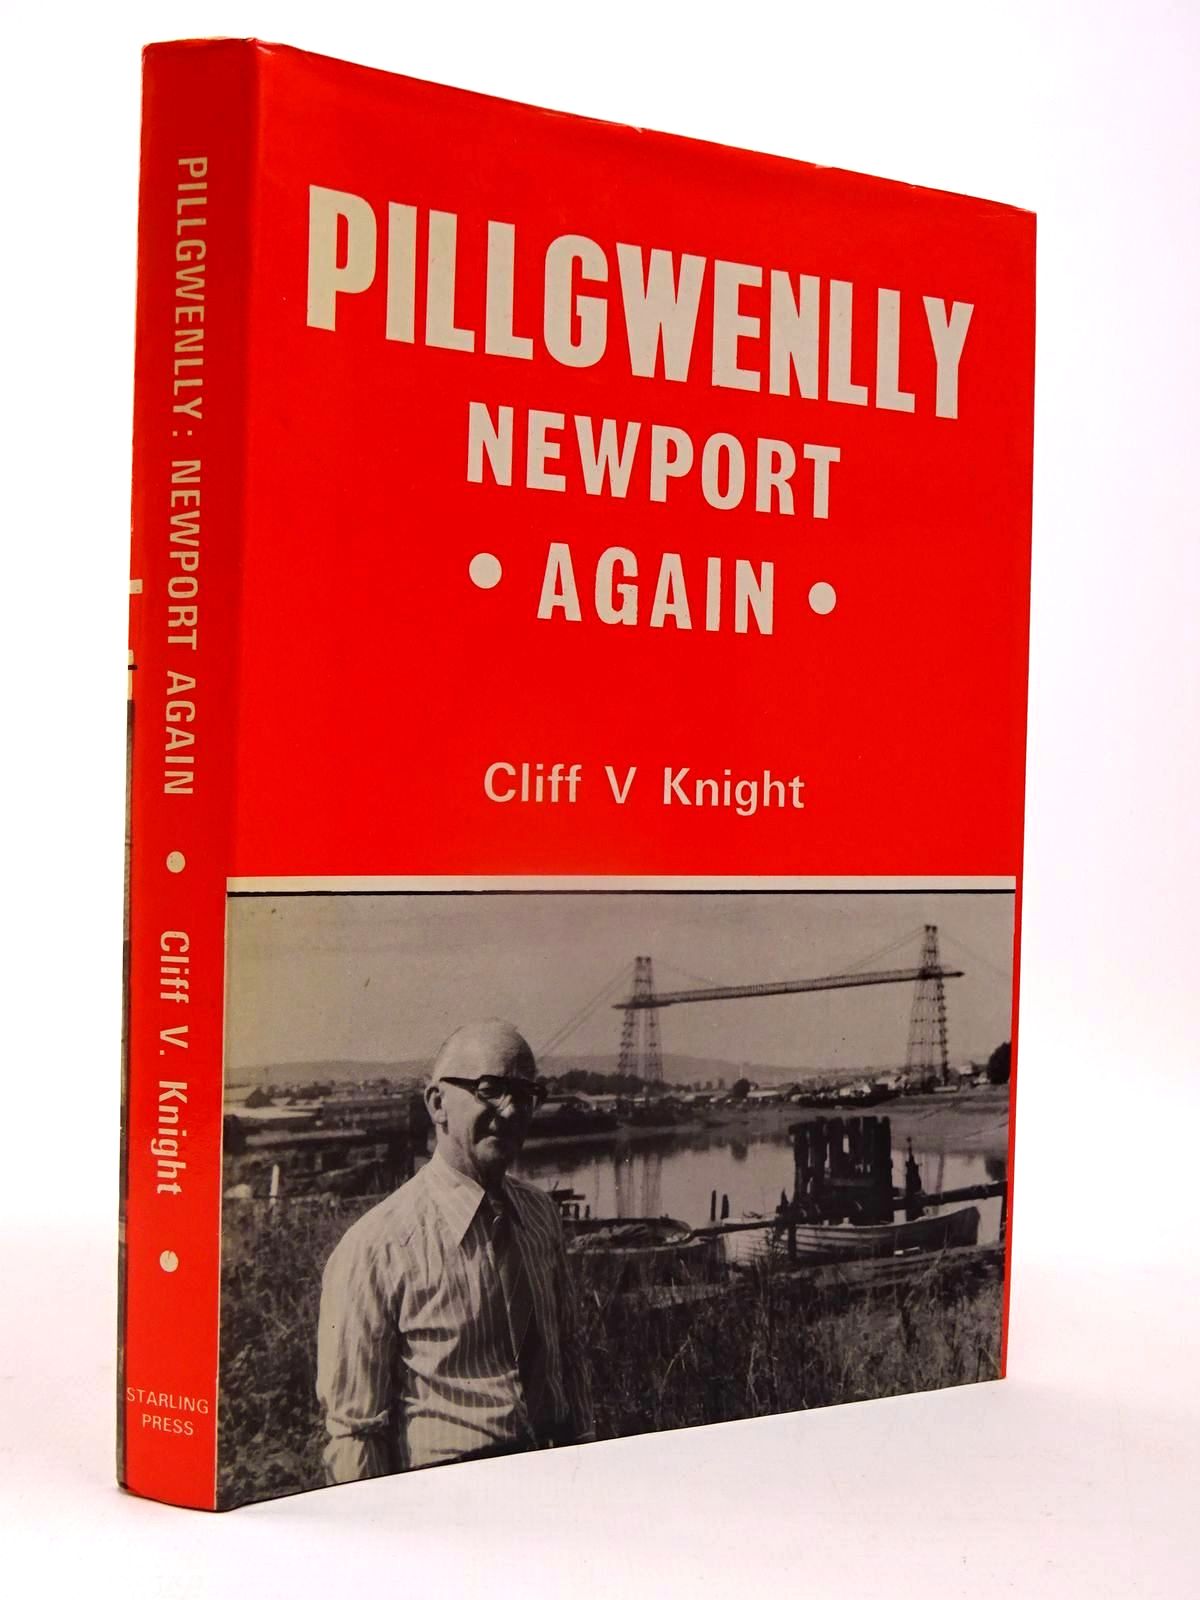 Pillgwenlly Newport Again